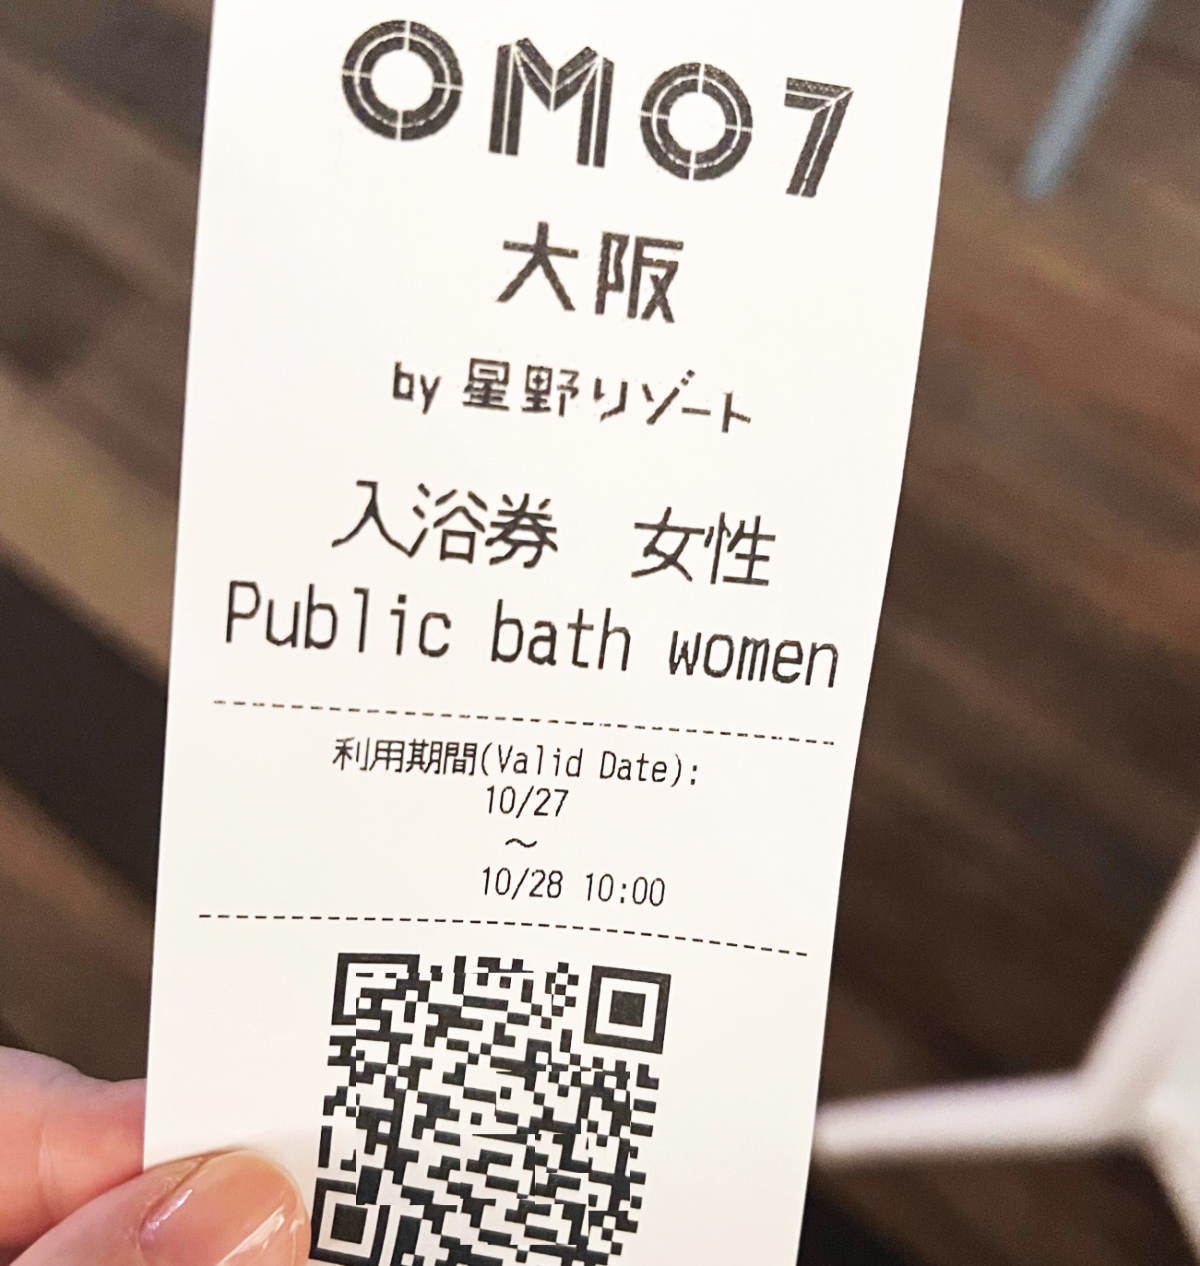 omo7大阪 湯屋のチケット